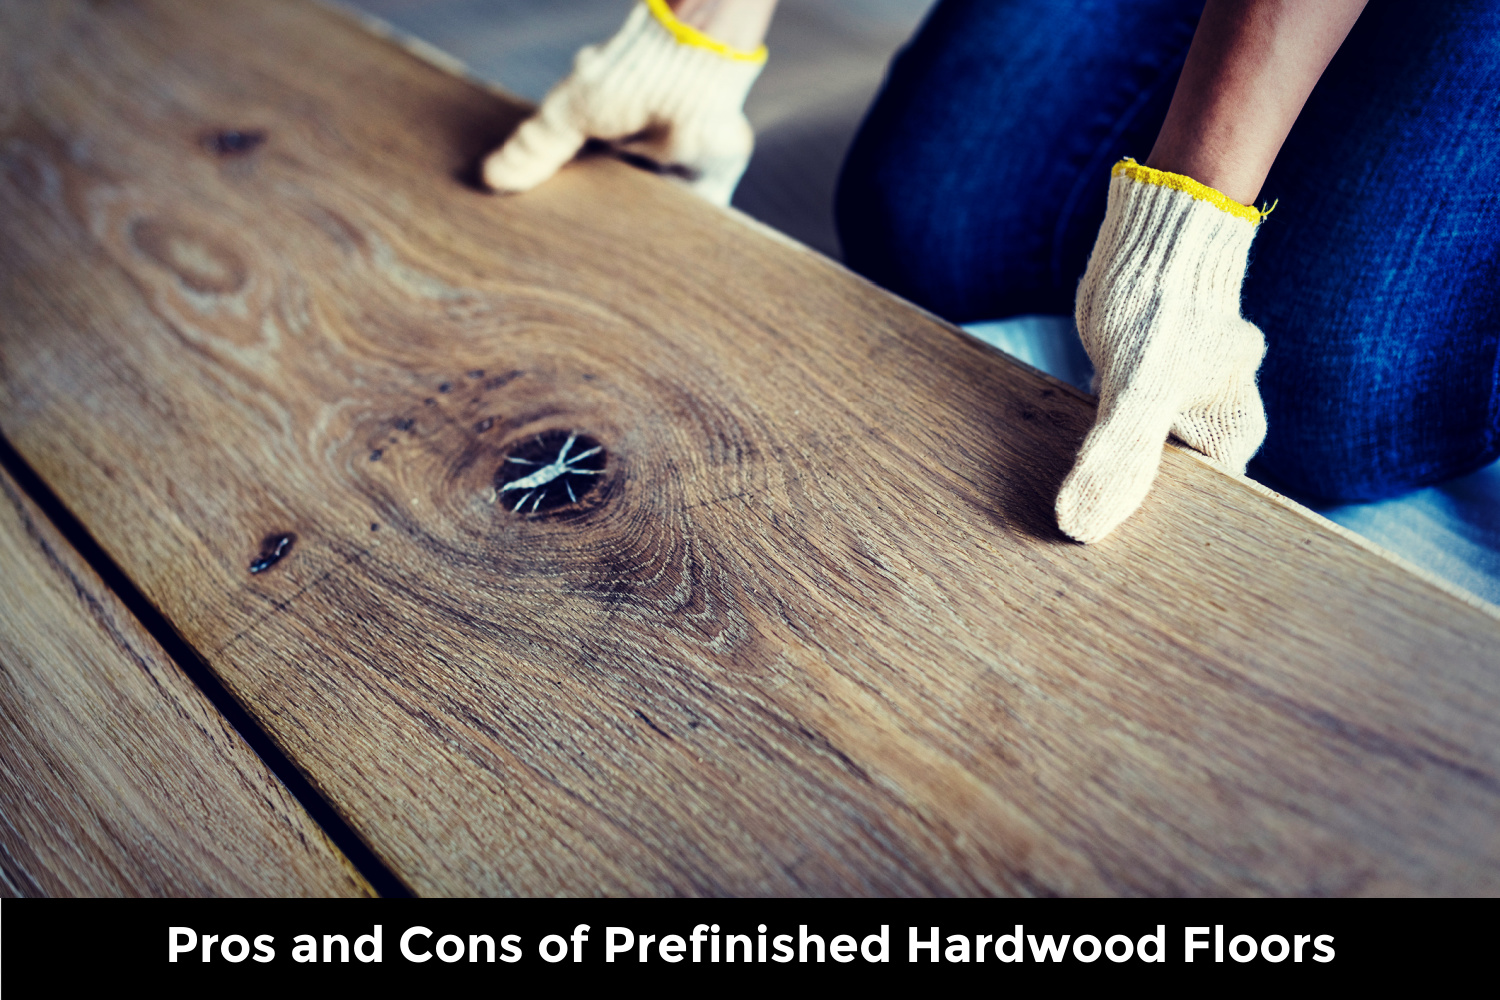 Should You Use Prefinished Hardwood Flooring?